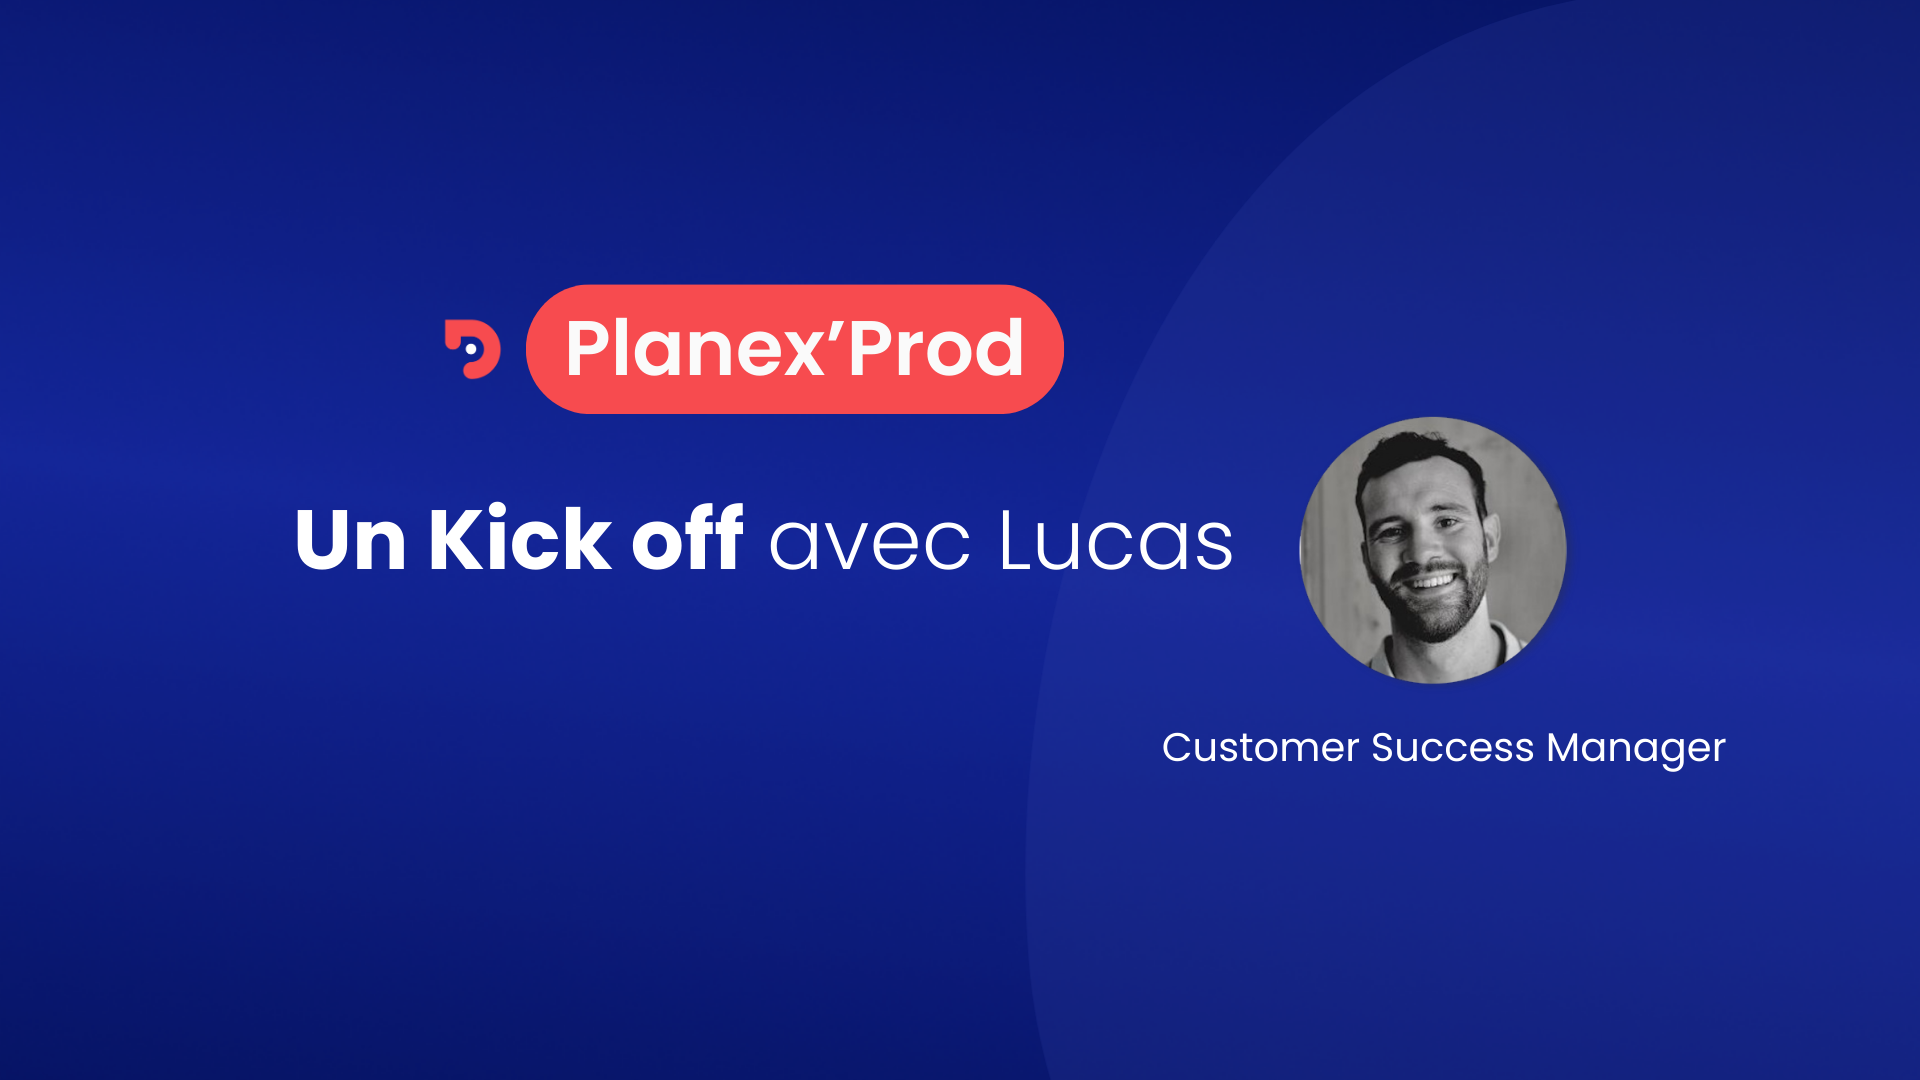 Vignette du Planex'prod "Un Kick Off avec Lucas". Fond bleu, on y voit le logo Planex'Prod, ainsi que le titre du tuto. Et une photo de Lucas en noir et blanc, avec son poste : Customer Success Manager.